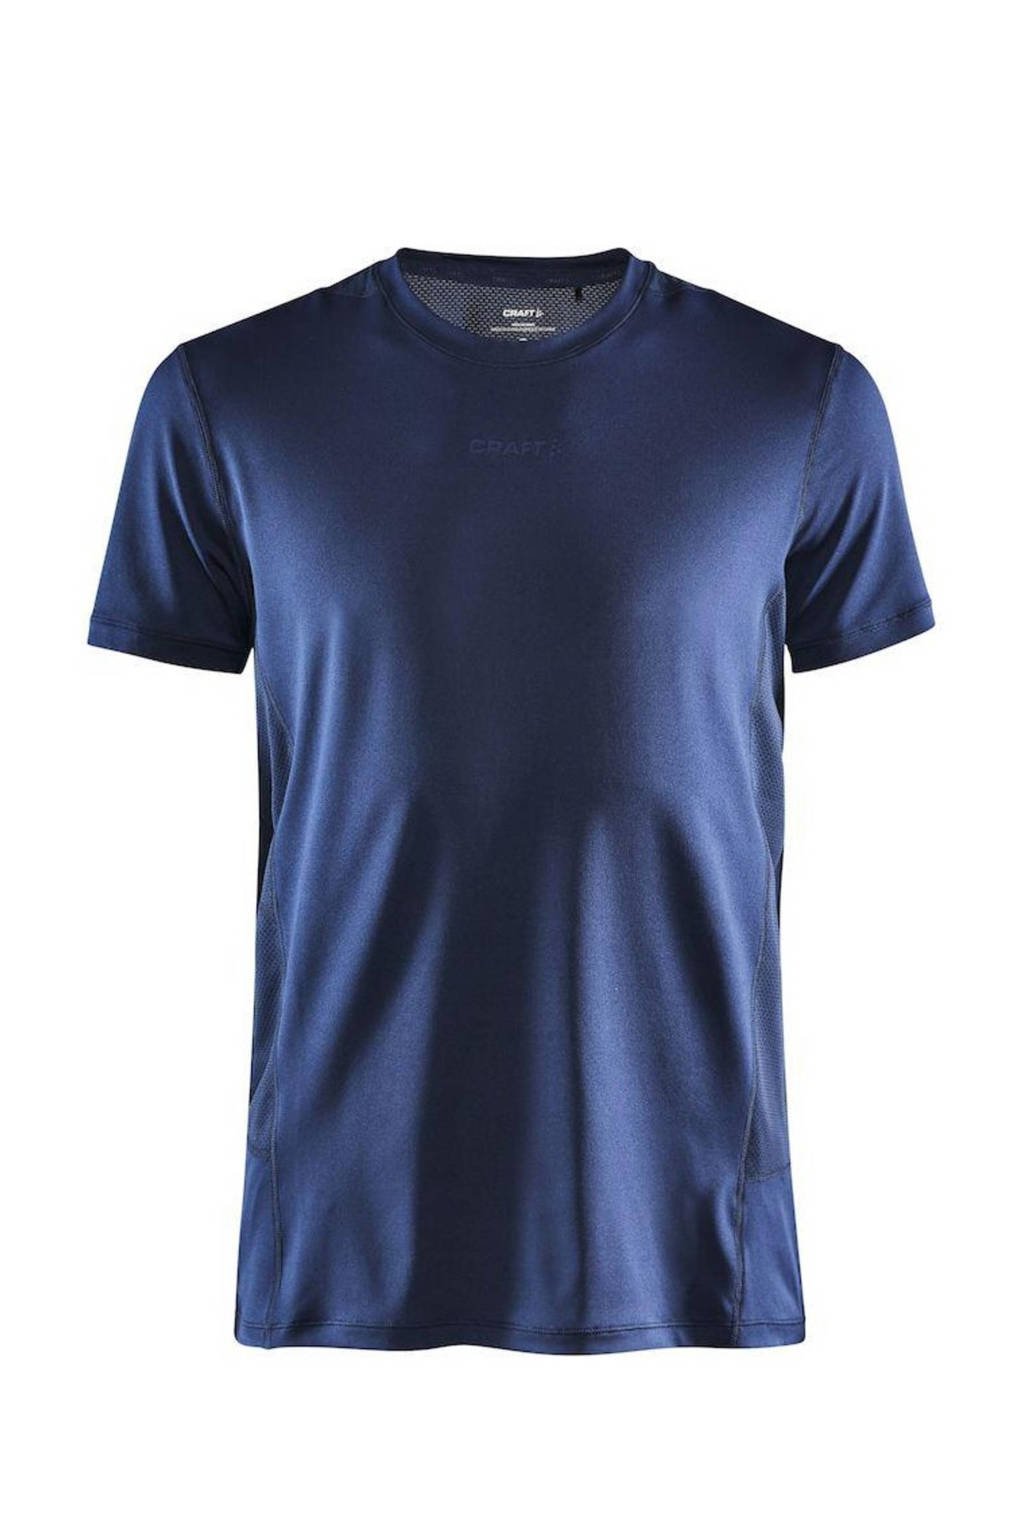 Craft   sport T-shirt donkerblauw, Donkerblauw